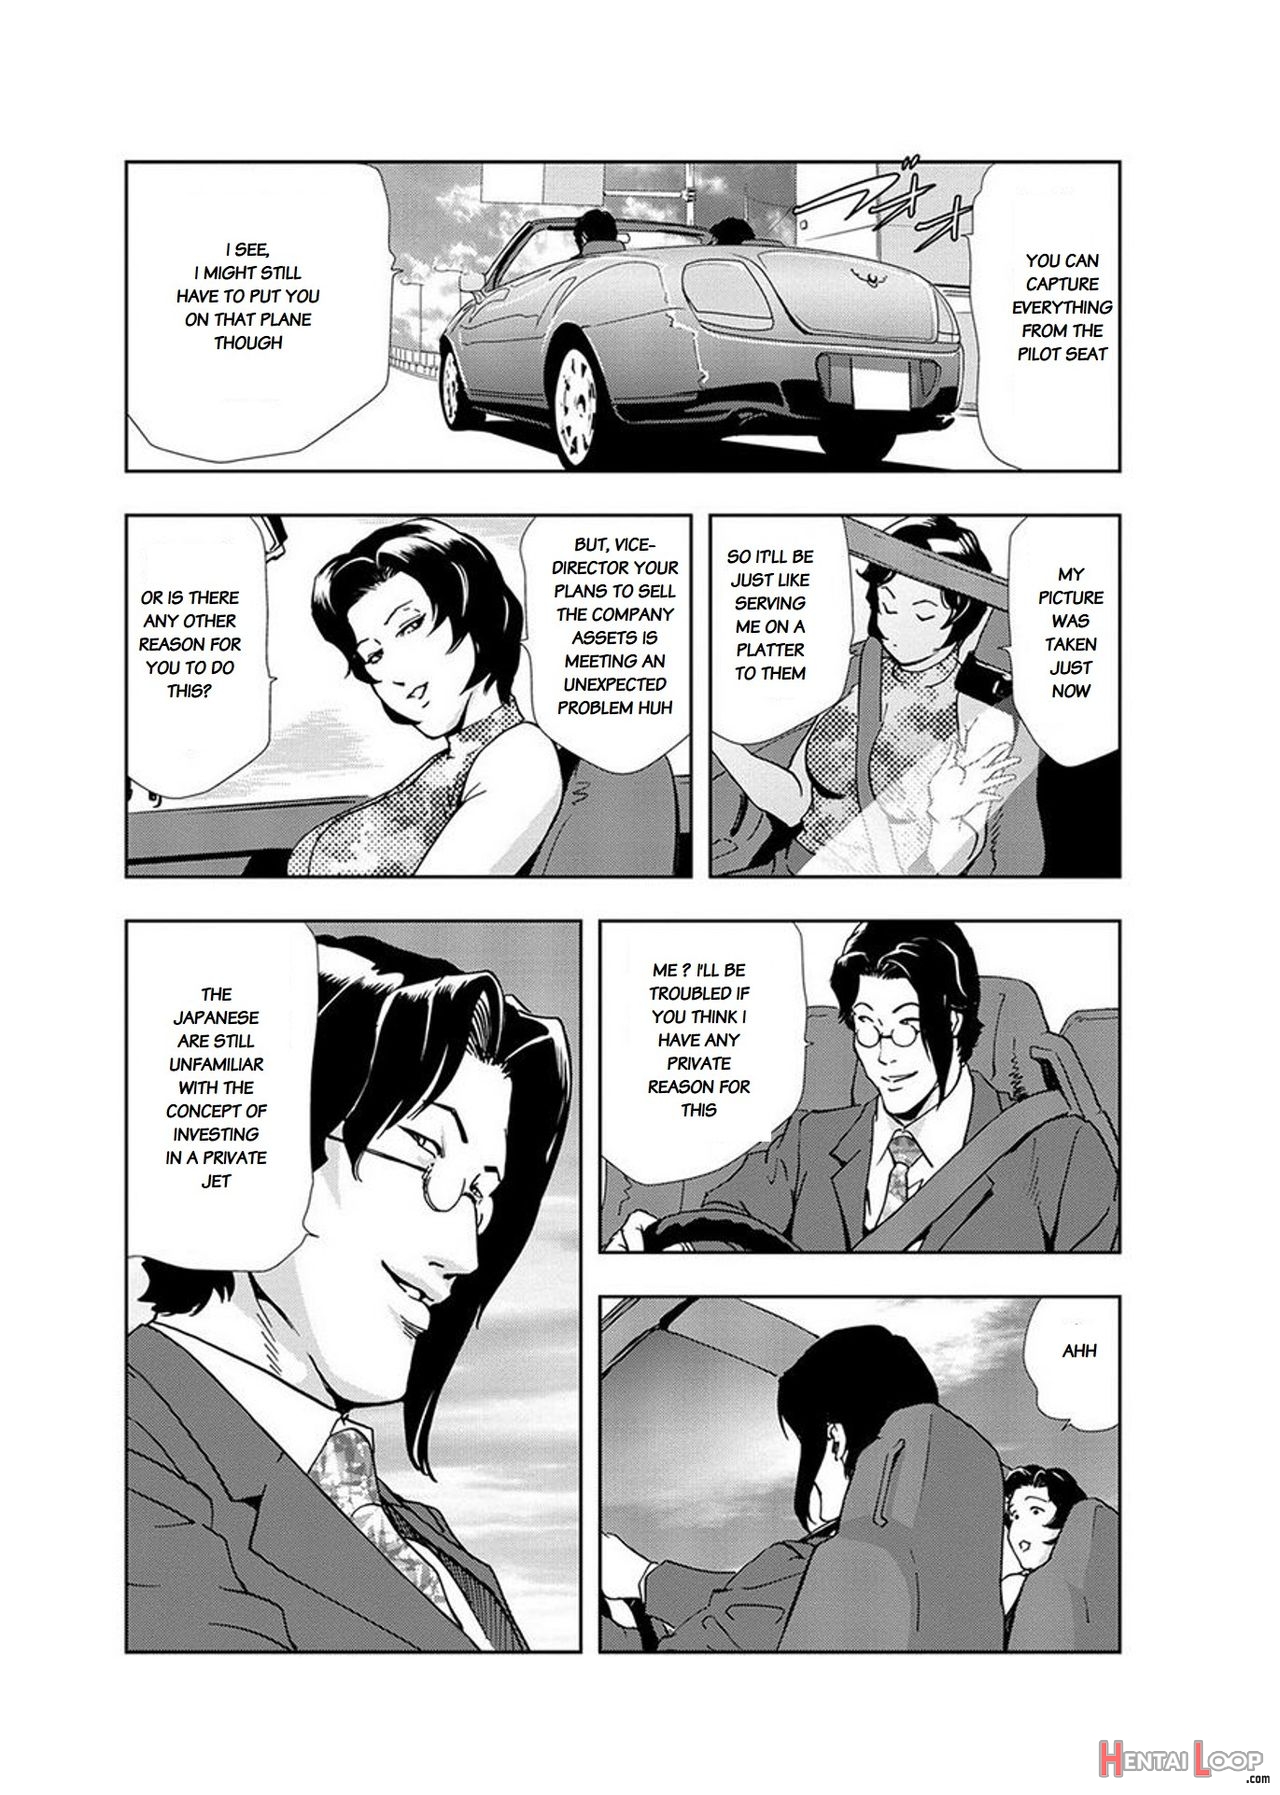 Nikuhisyo Yukiko Volume Iii To V Ch. 13-24 page 6